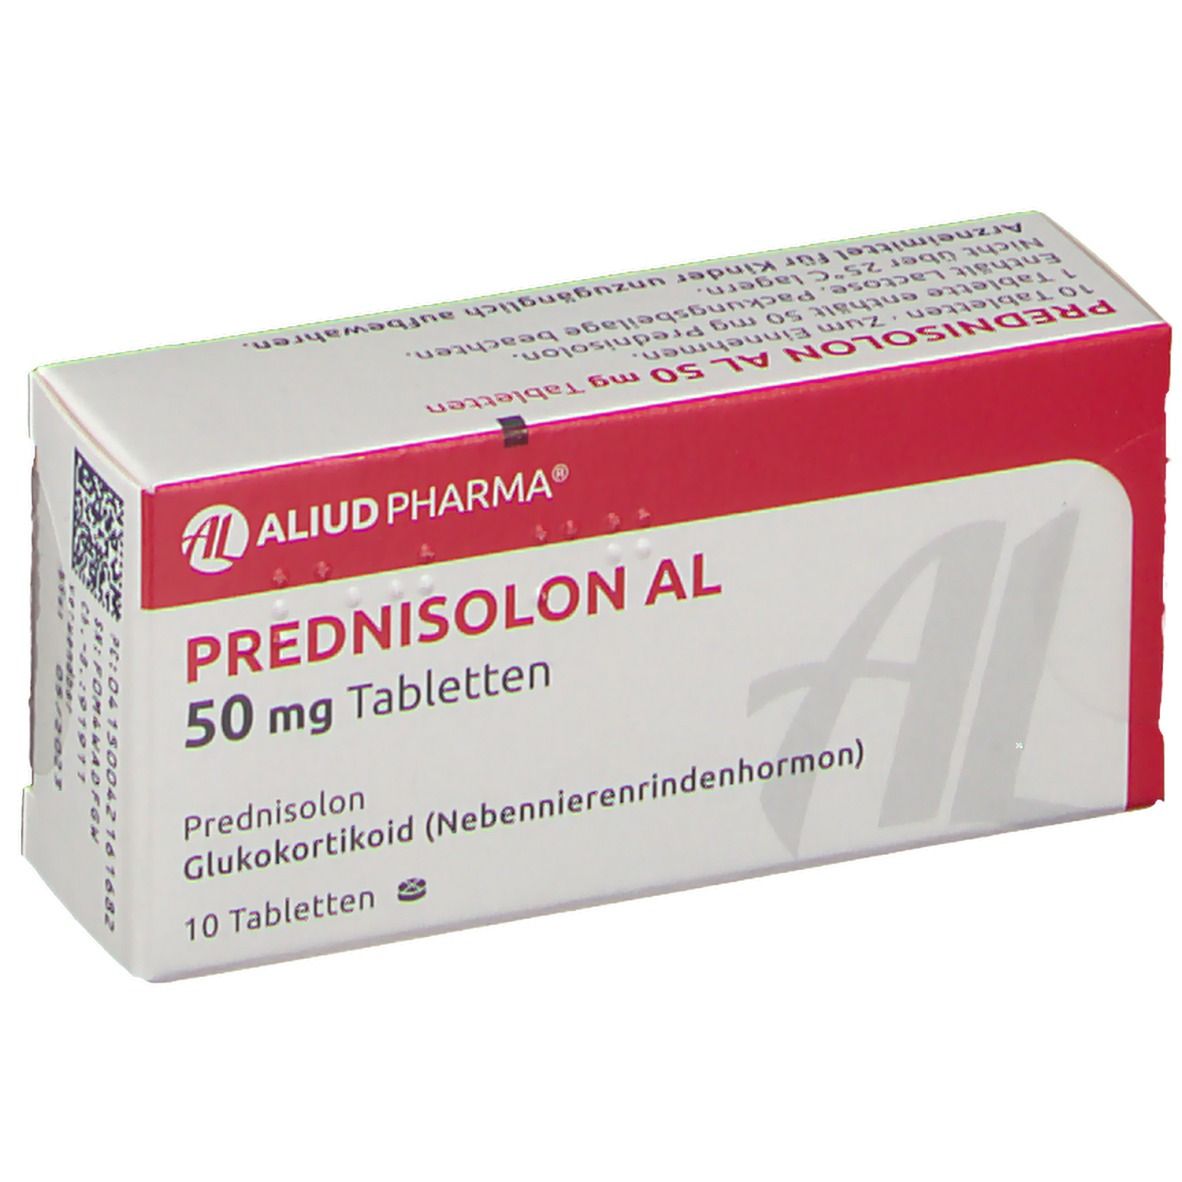 Prednisolon AL 50 mg